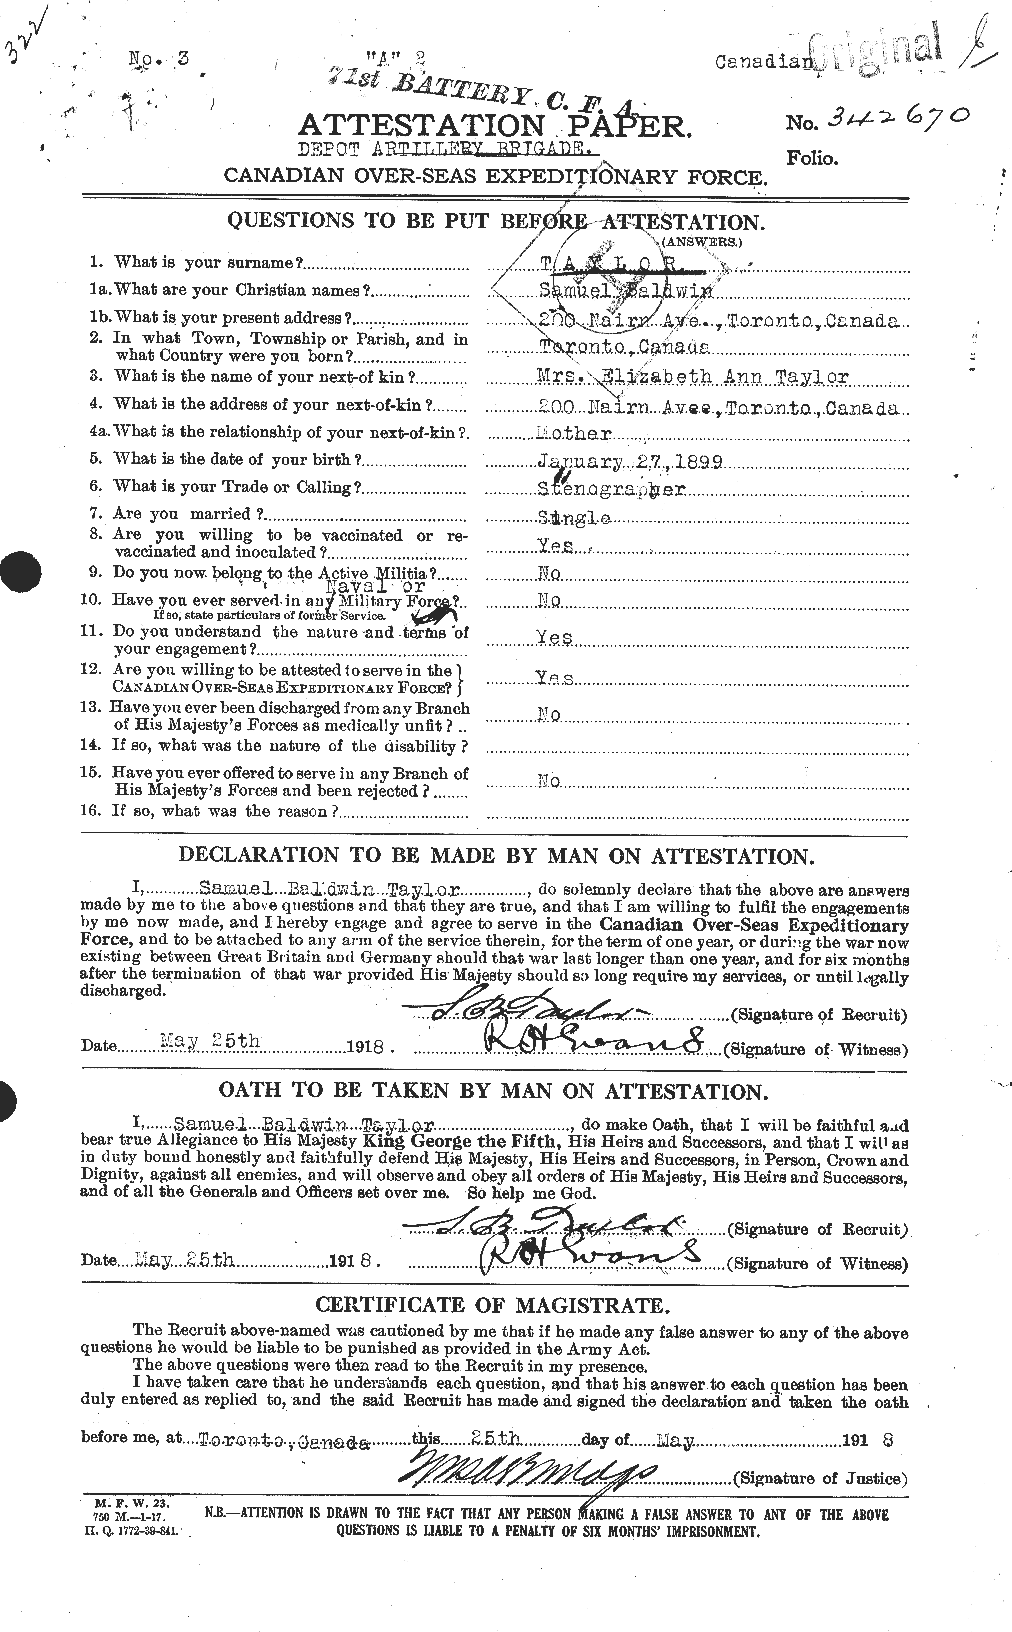 Dossiers du Personnel de la Première Guerre mondiale - CEC 627875a